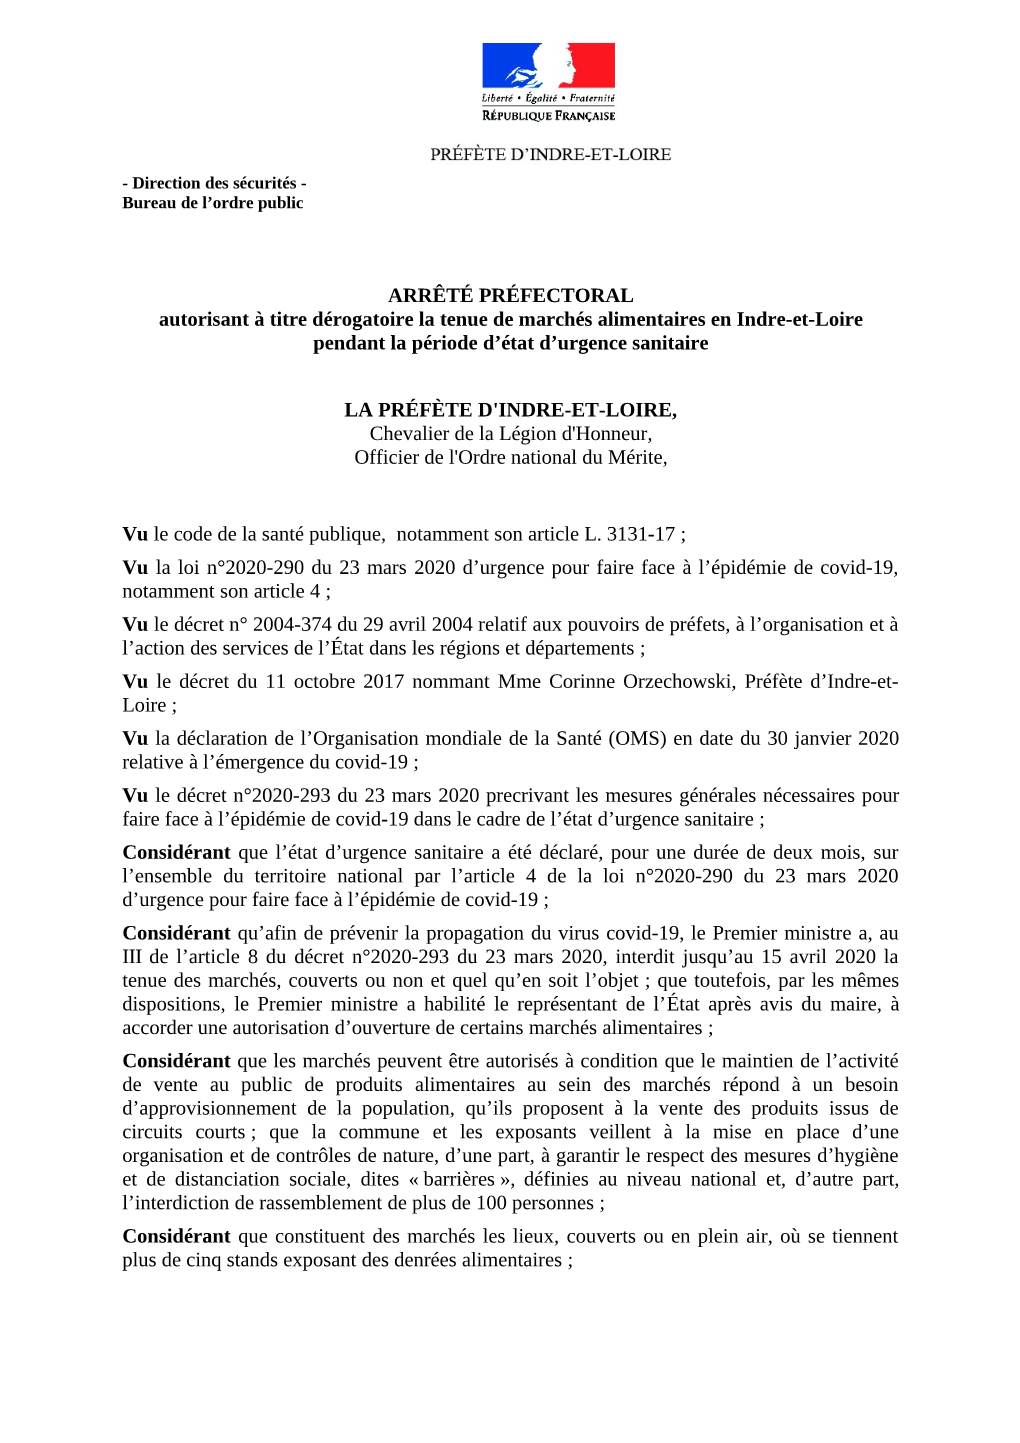 ARRÊTÉ PRÉFECTORAL Autorisant À Titre Dérogatoire La Tenue De Marchés Alimentaires En Indre-Et-Loire Pendant La Période D’État D’Urgence Sanitaire